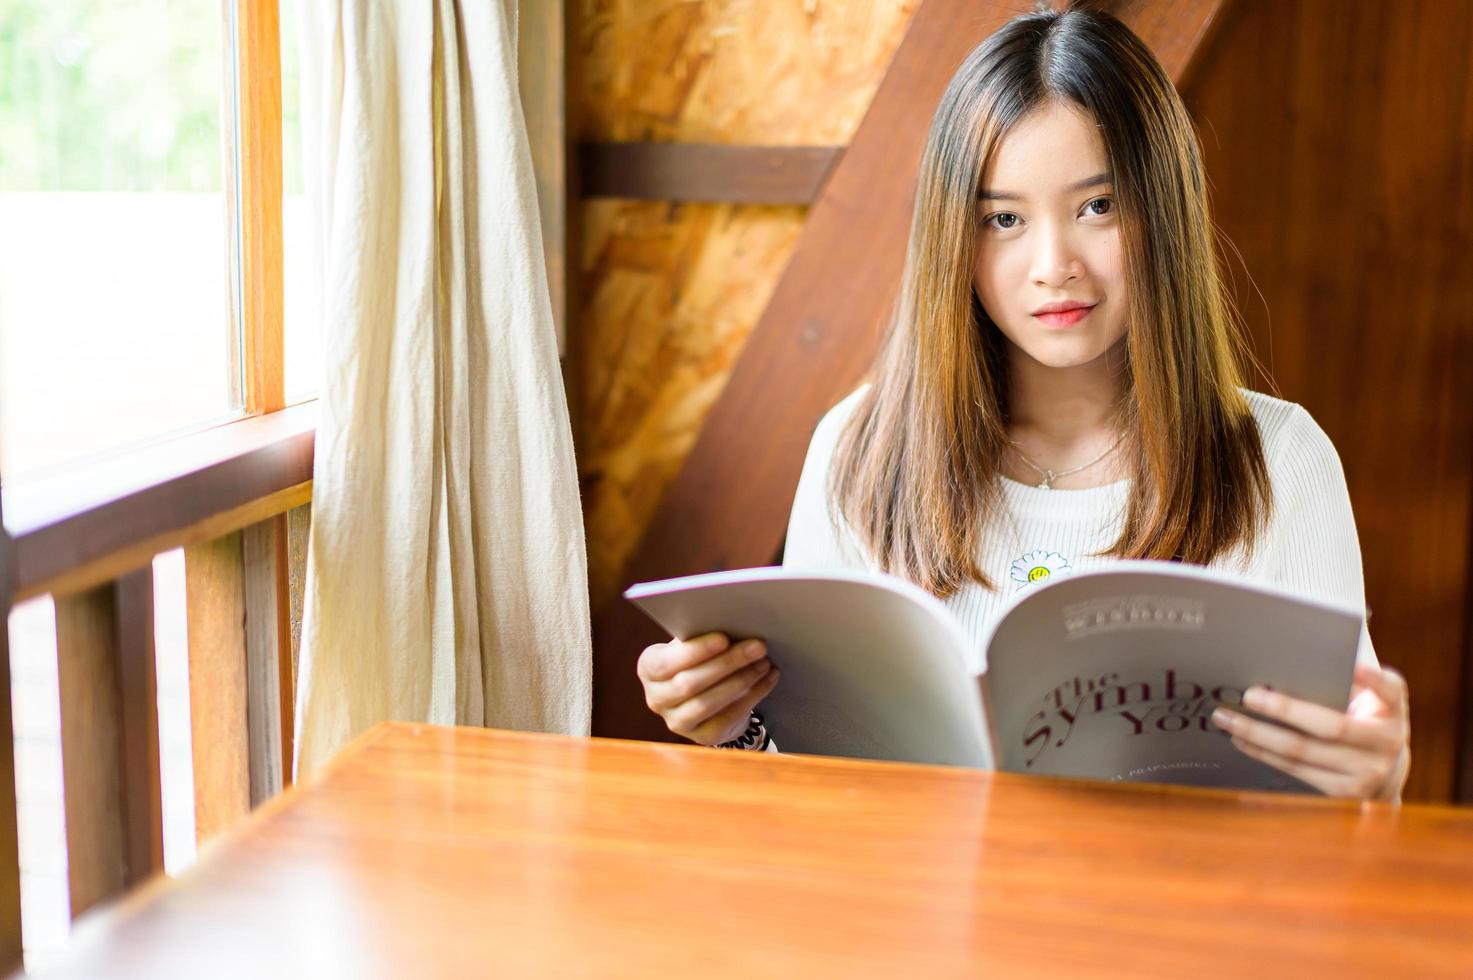 schöne Frau sitzt in einem Café und liest ein Buch foto